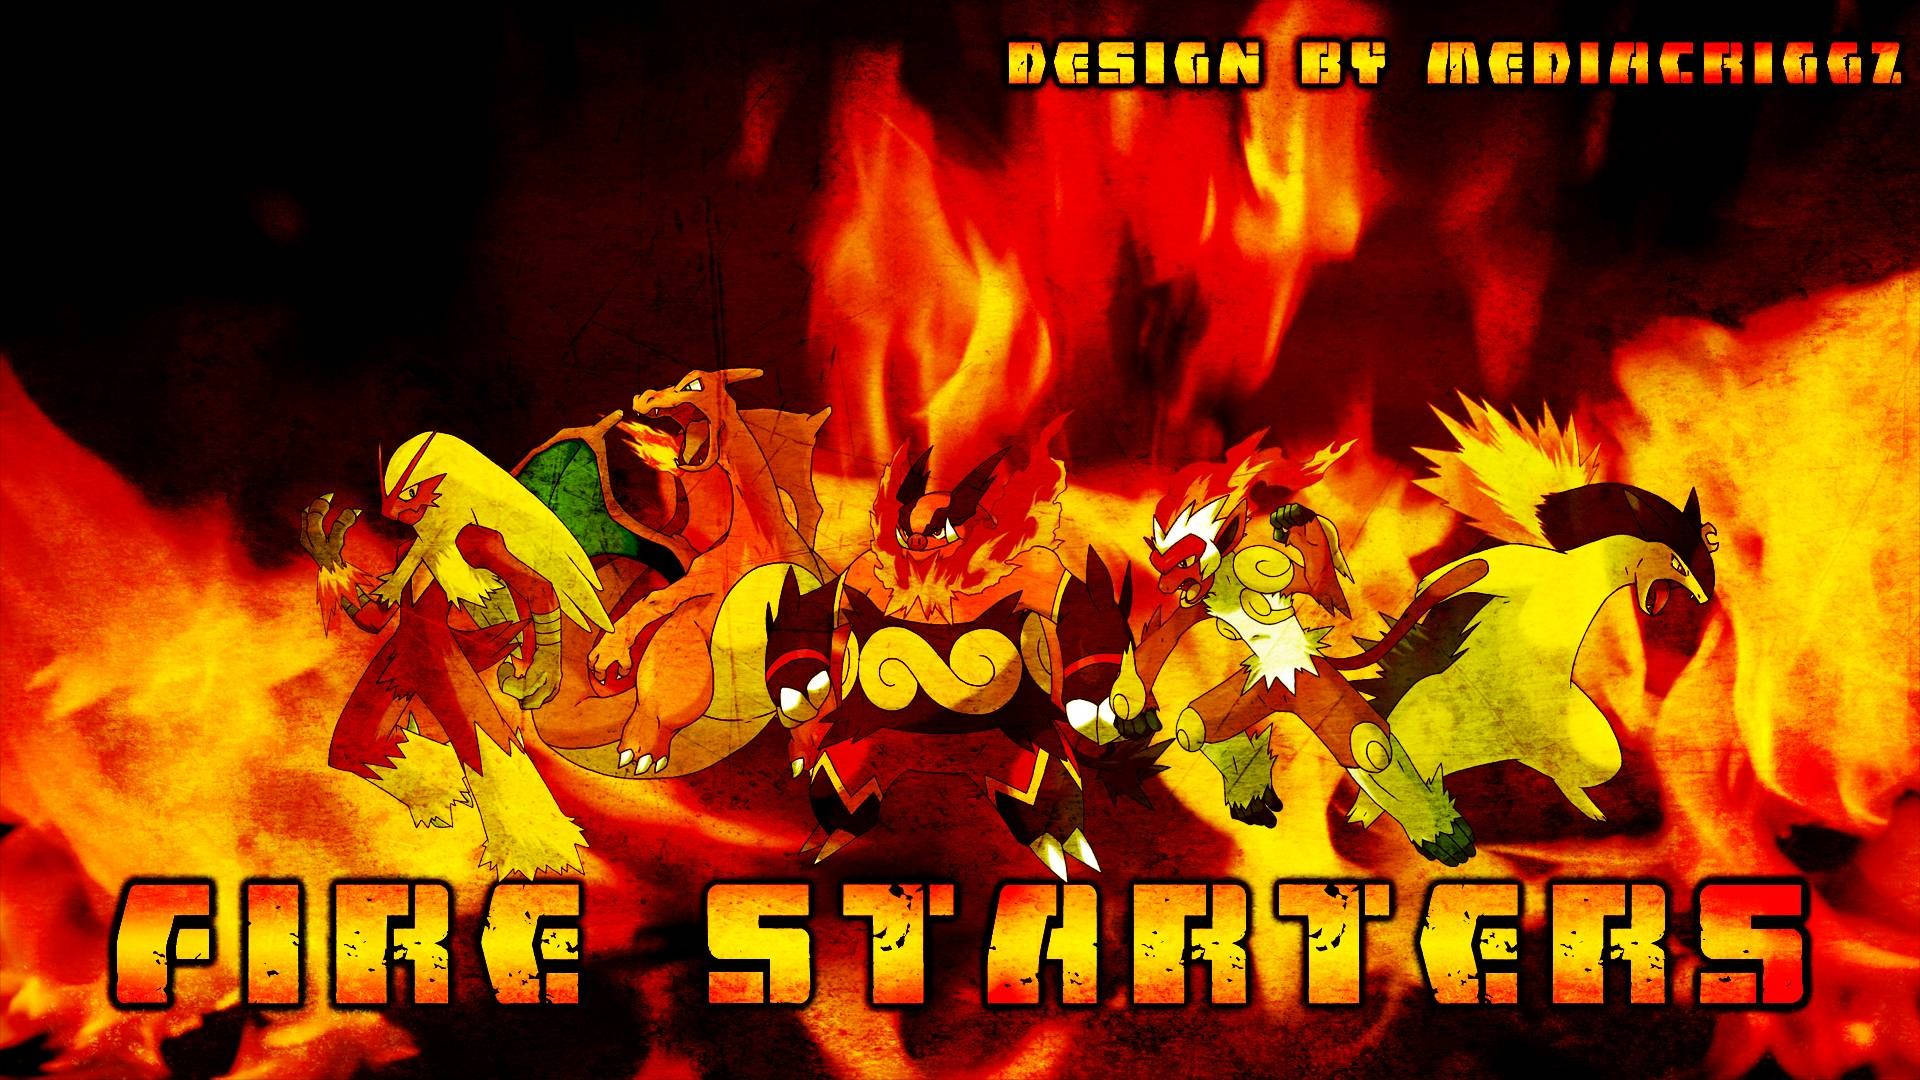 Fire Type Pokemons On Fire